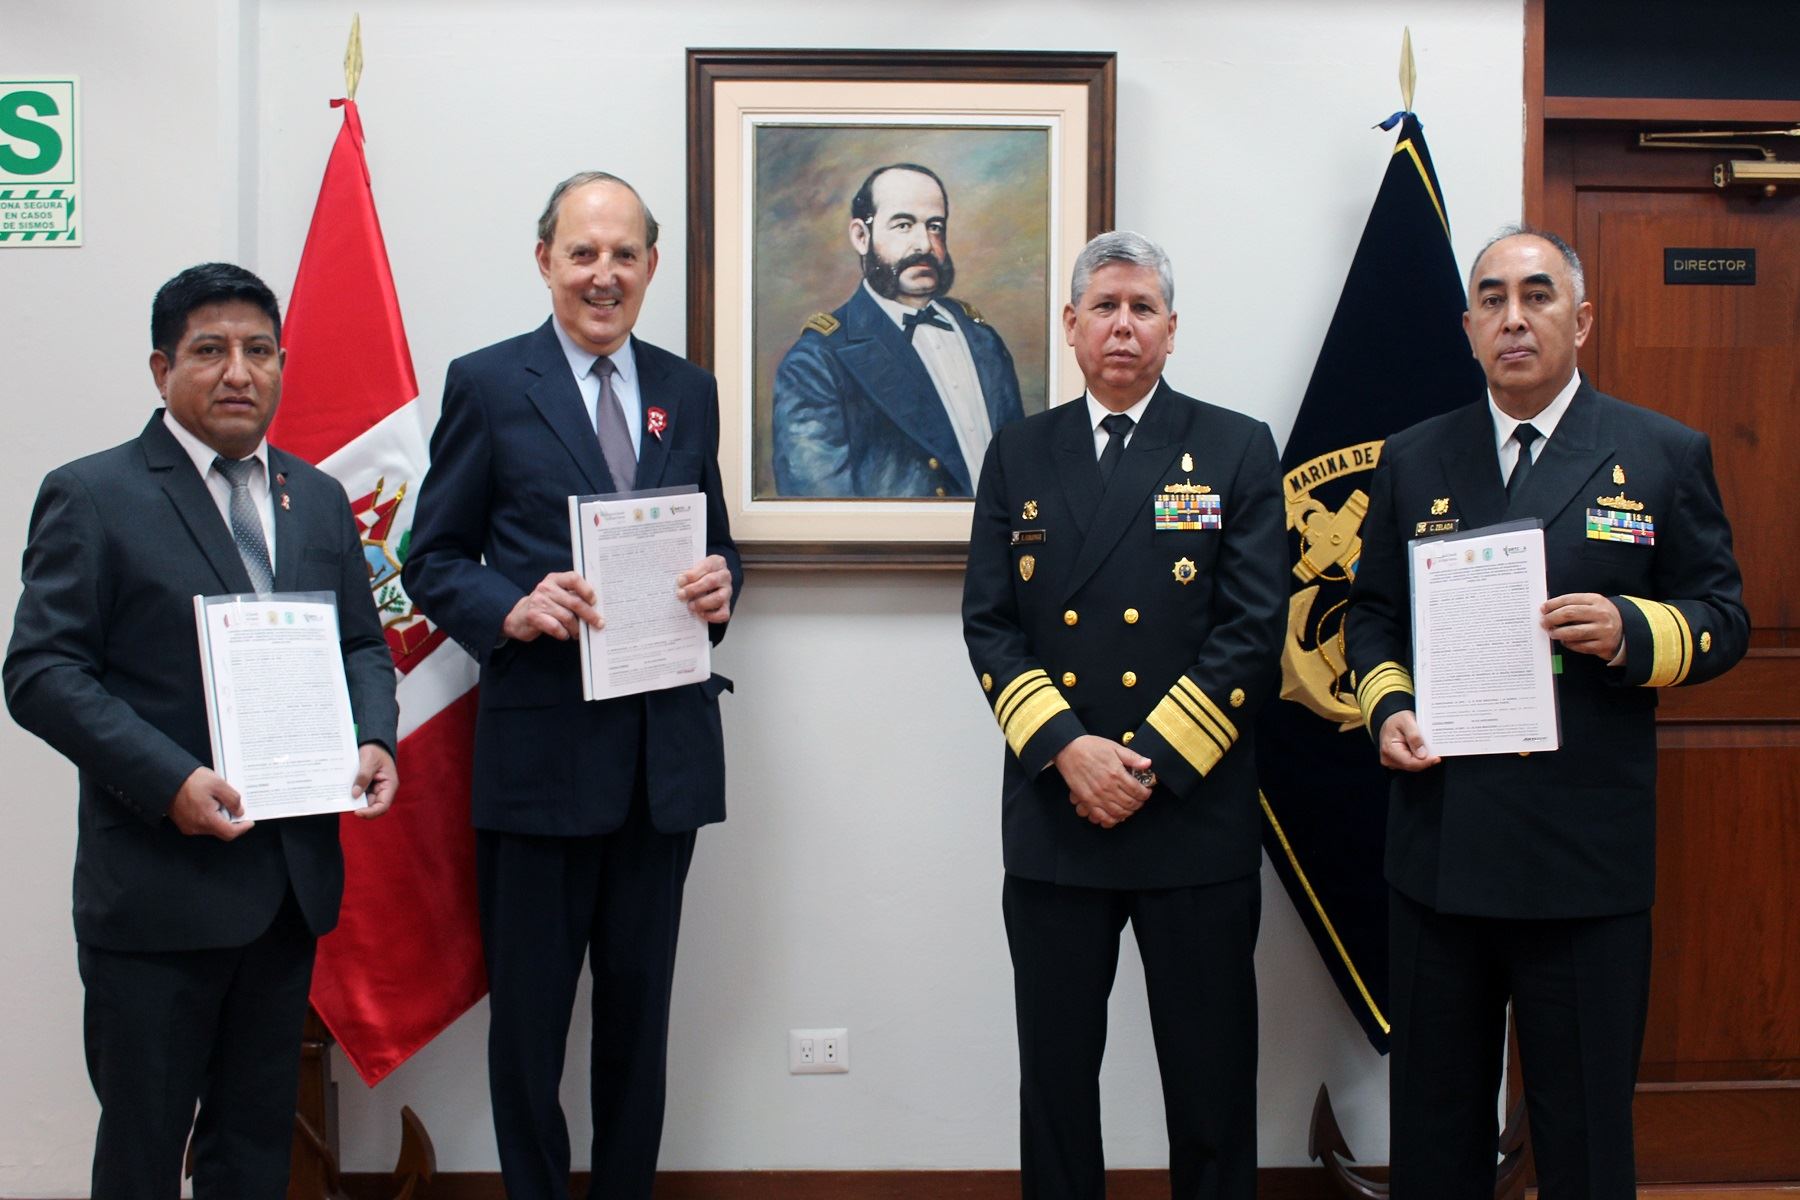 Plan Binacional de Desarrollo de la Región Fronteriza Perú-Ecuador.